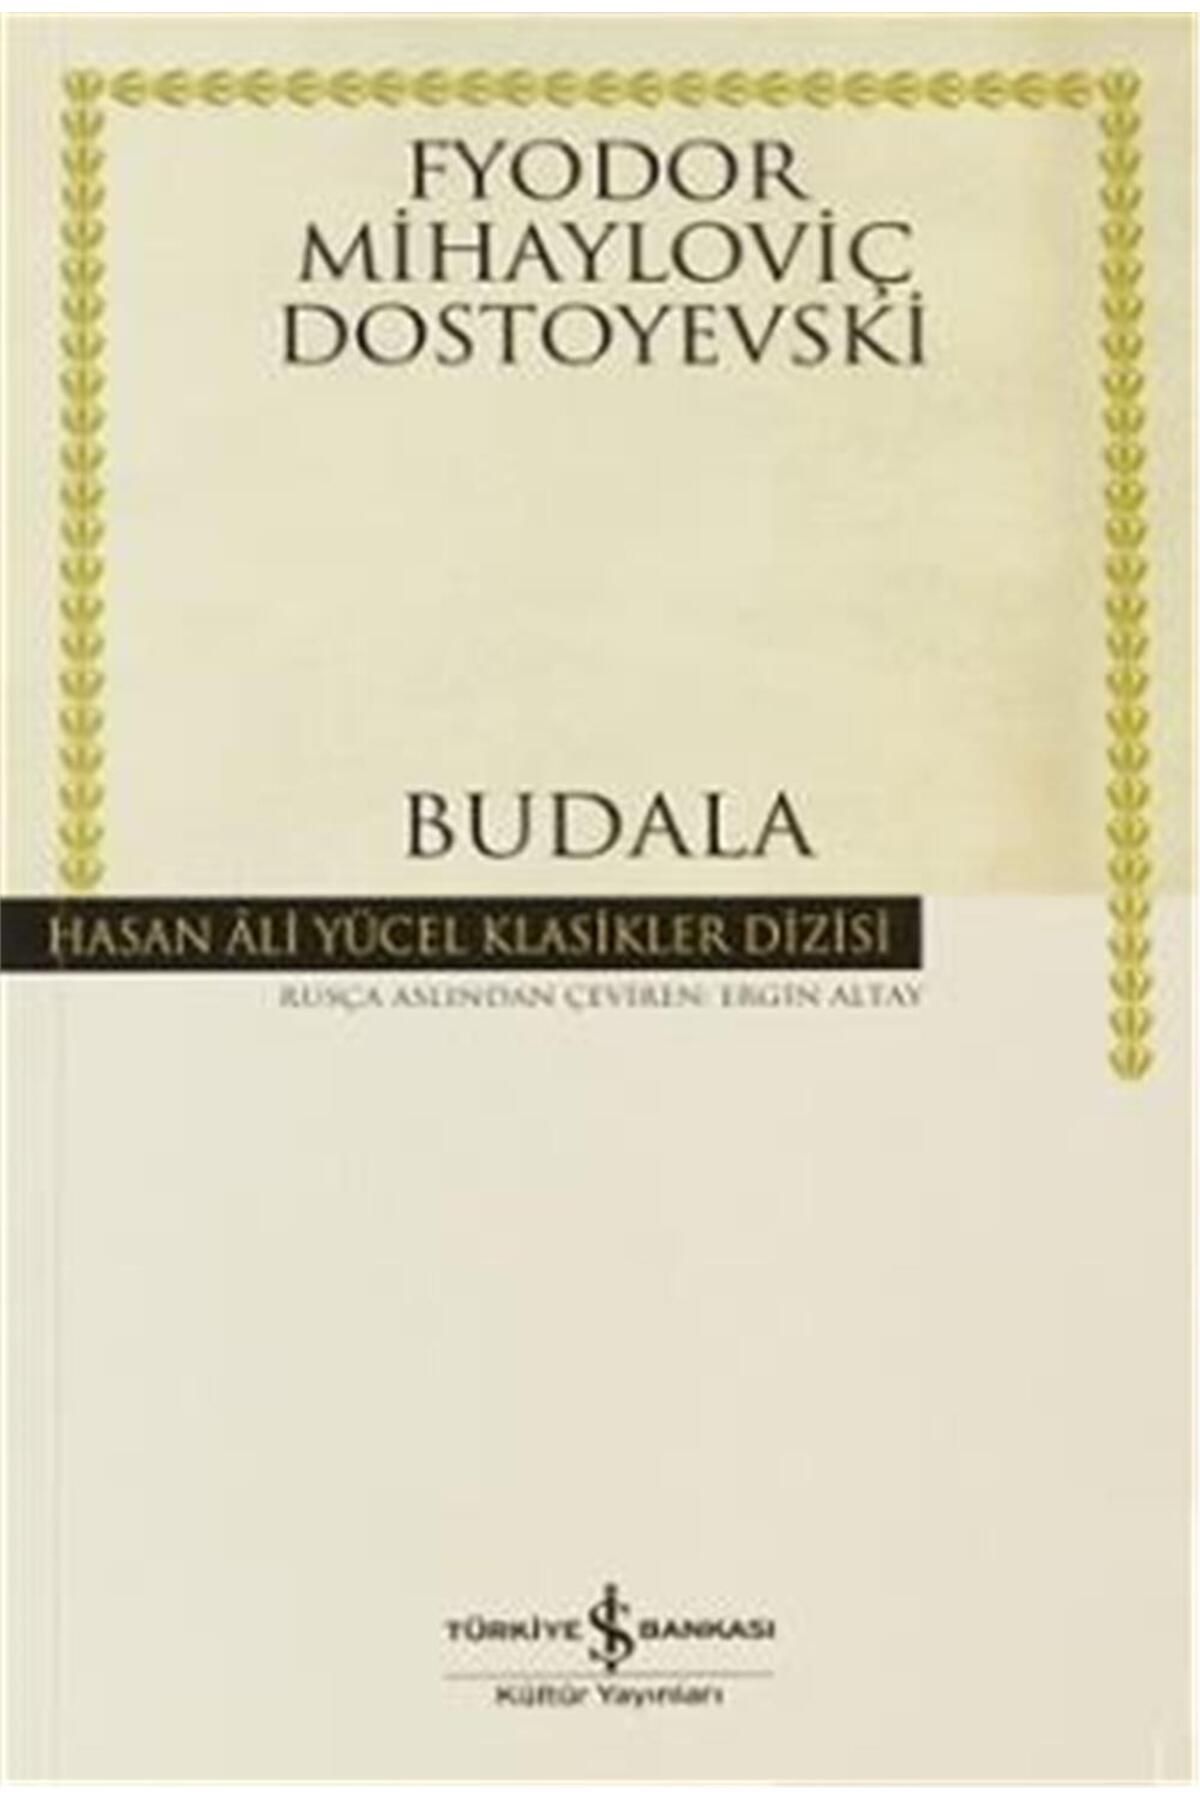 Türkiye İş Bankası Kültür Yayınları Hasan Ali Yücel Klasikler Dizisi - Budala